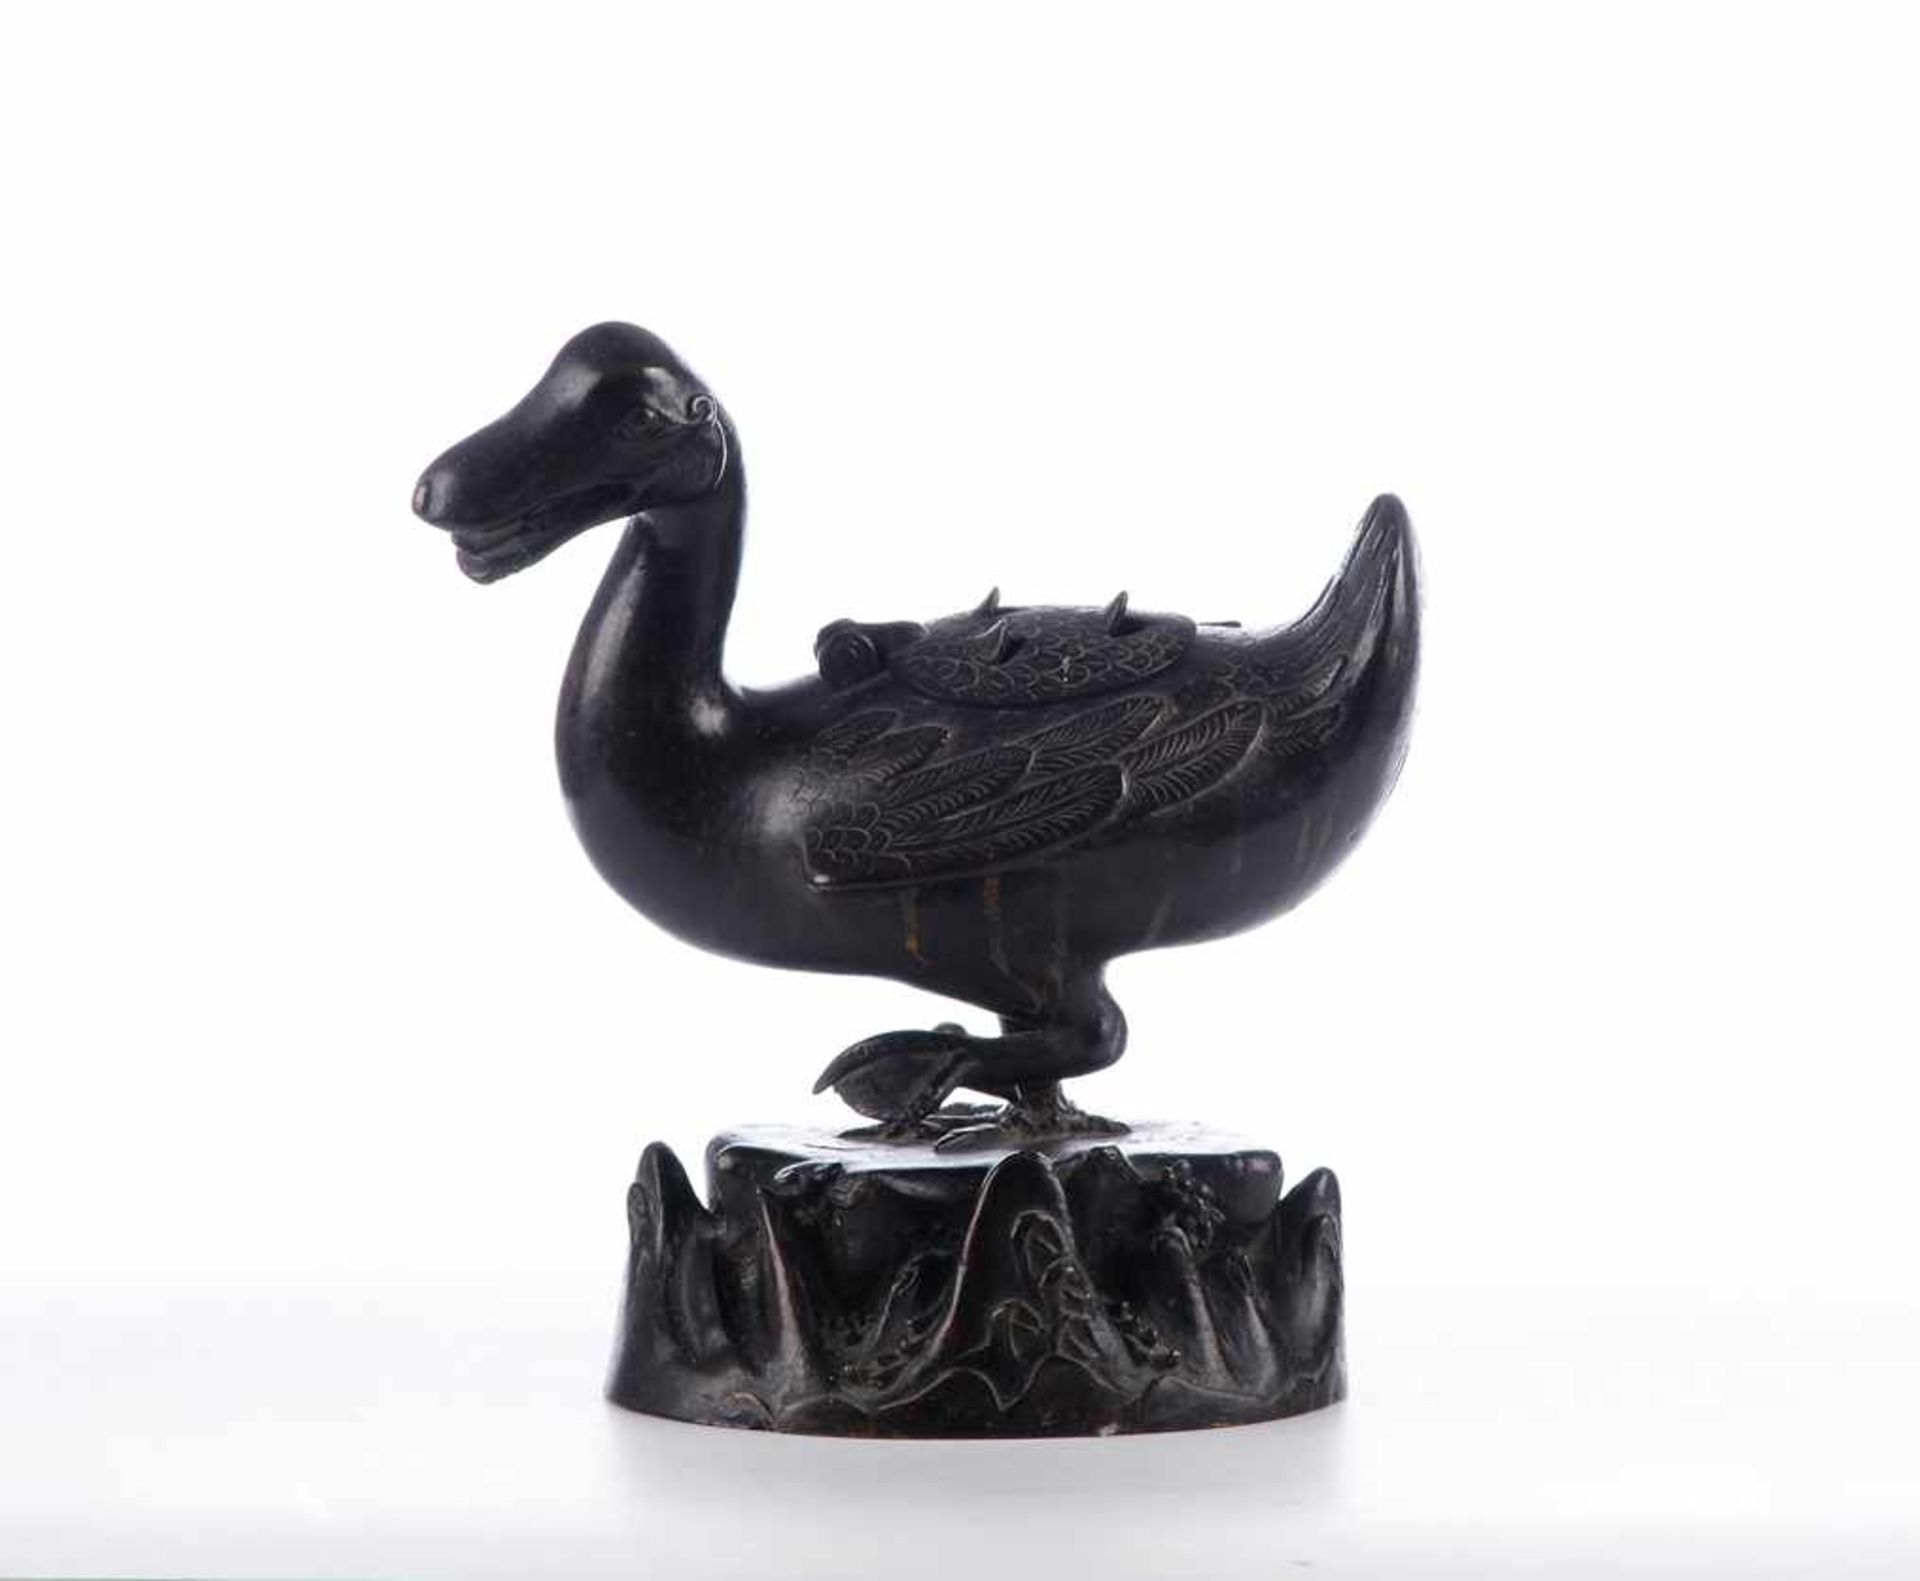 Räuchergefäß. Asiatika, Japan. Gehende Ente, Bronze, dunkel patiniert, 19. Jahrhundert. Am Fuß